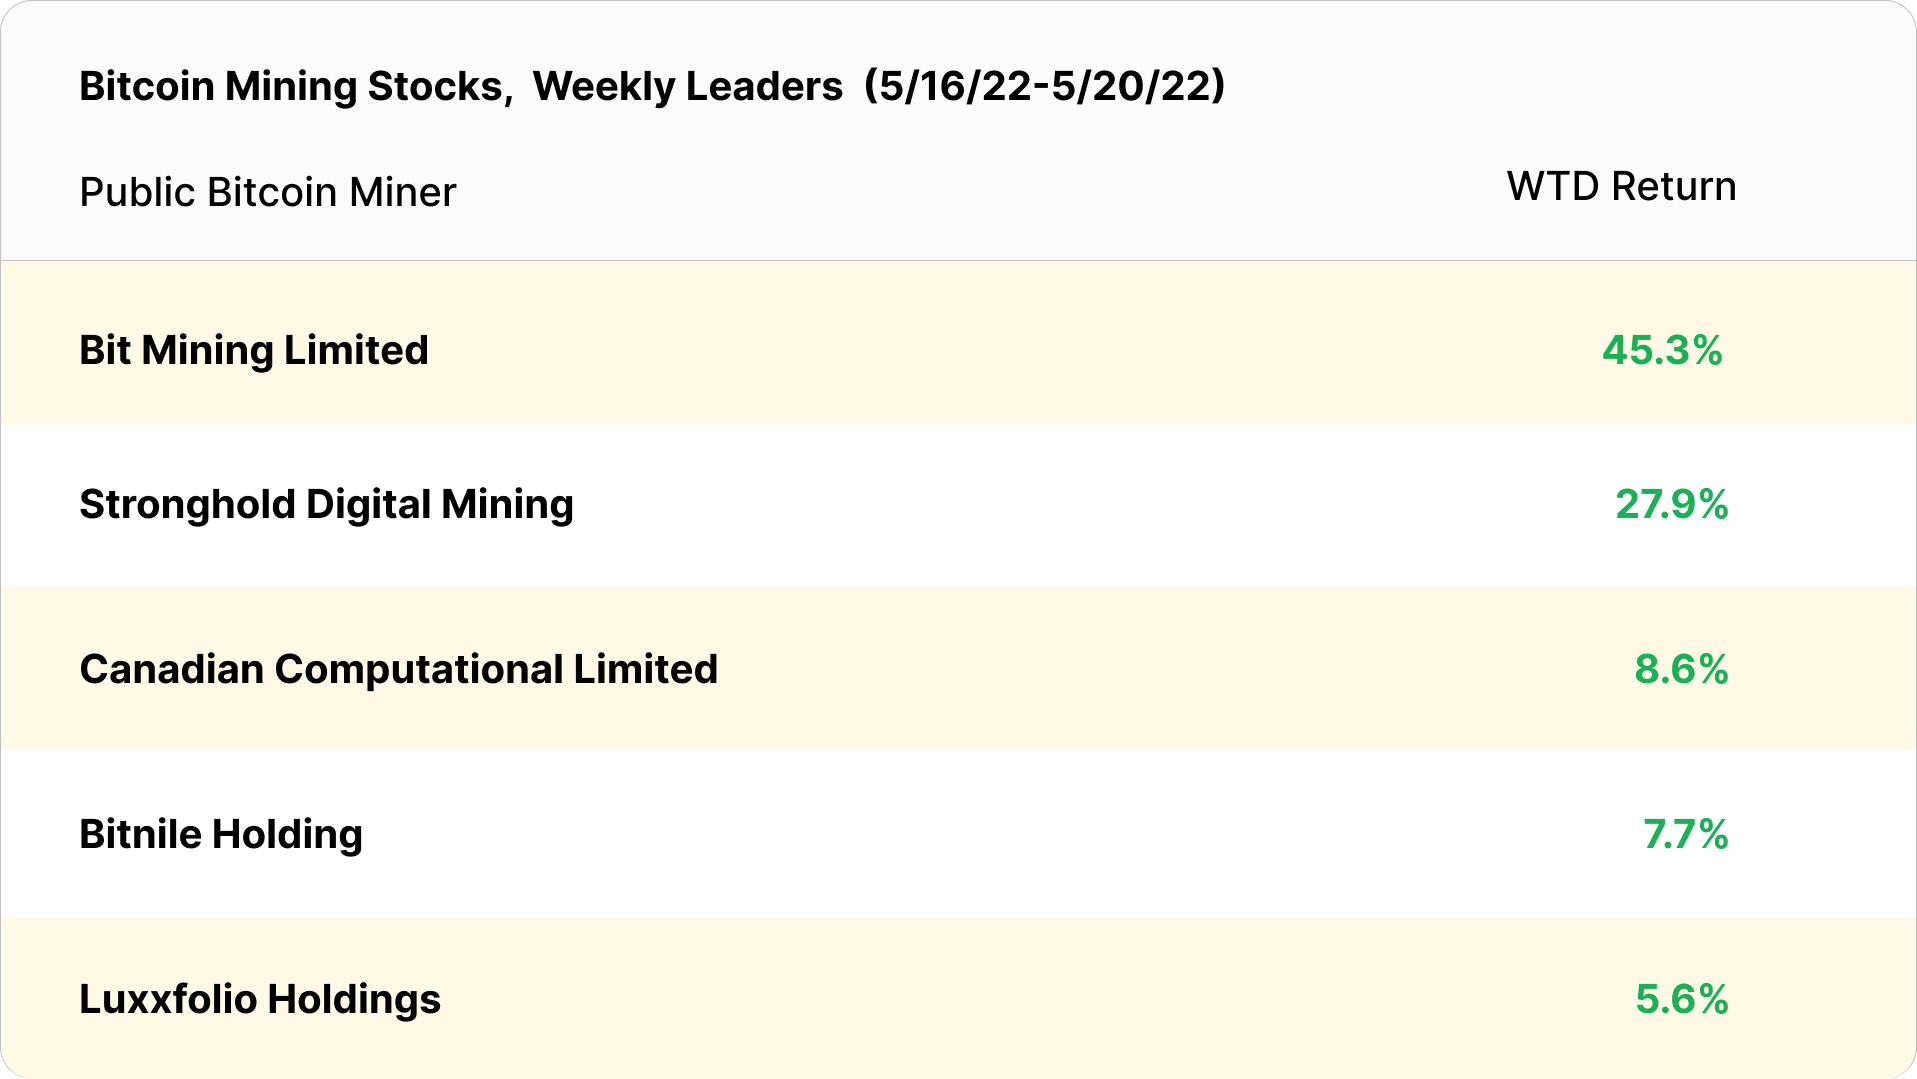 bitcoin mining stocks weekly leaders (May 16 - May 20, 2022)